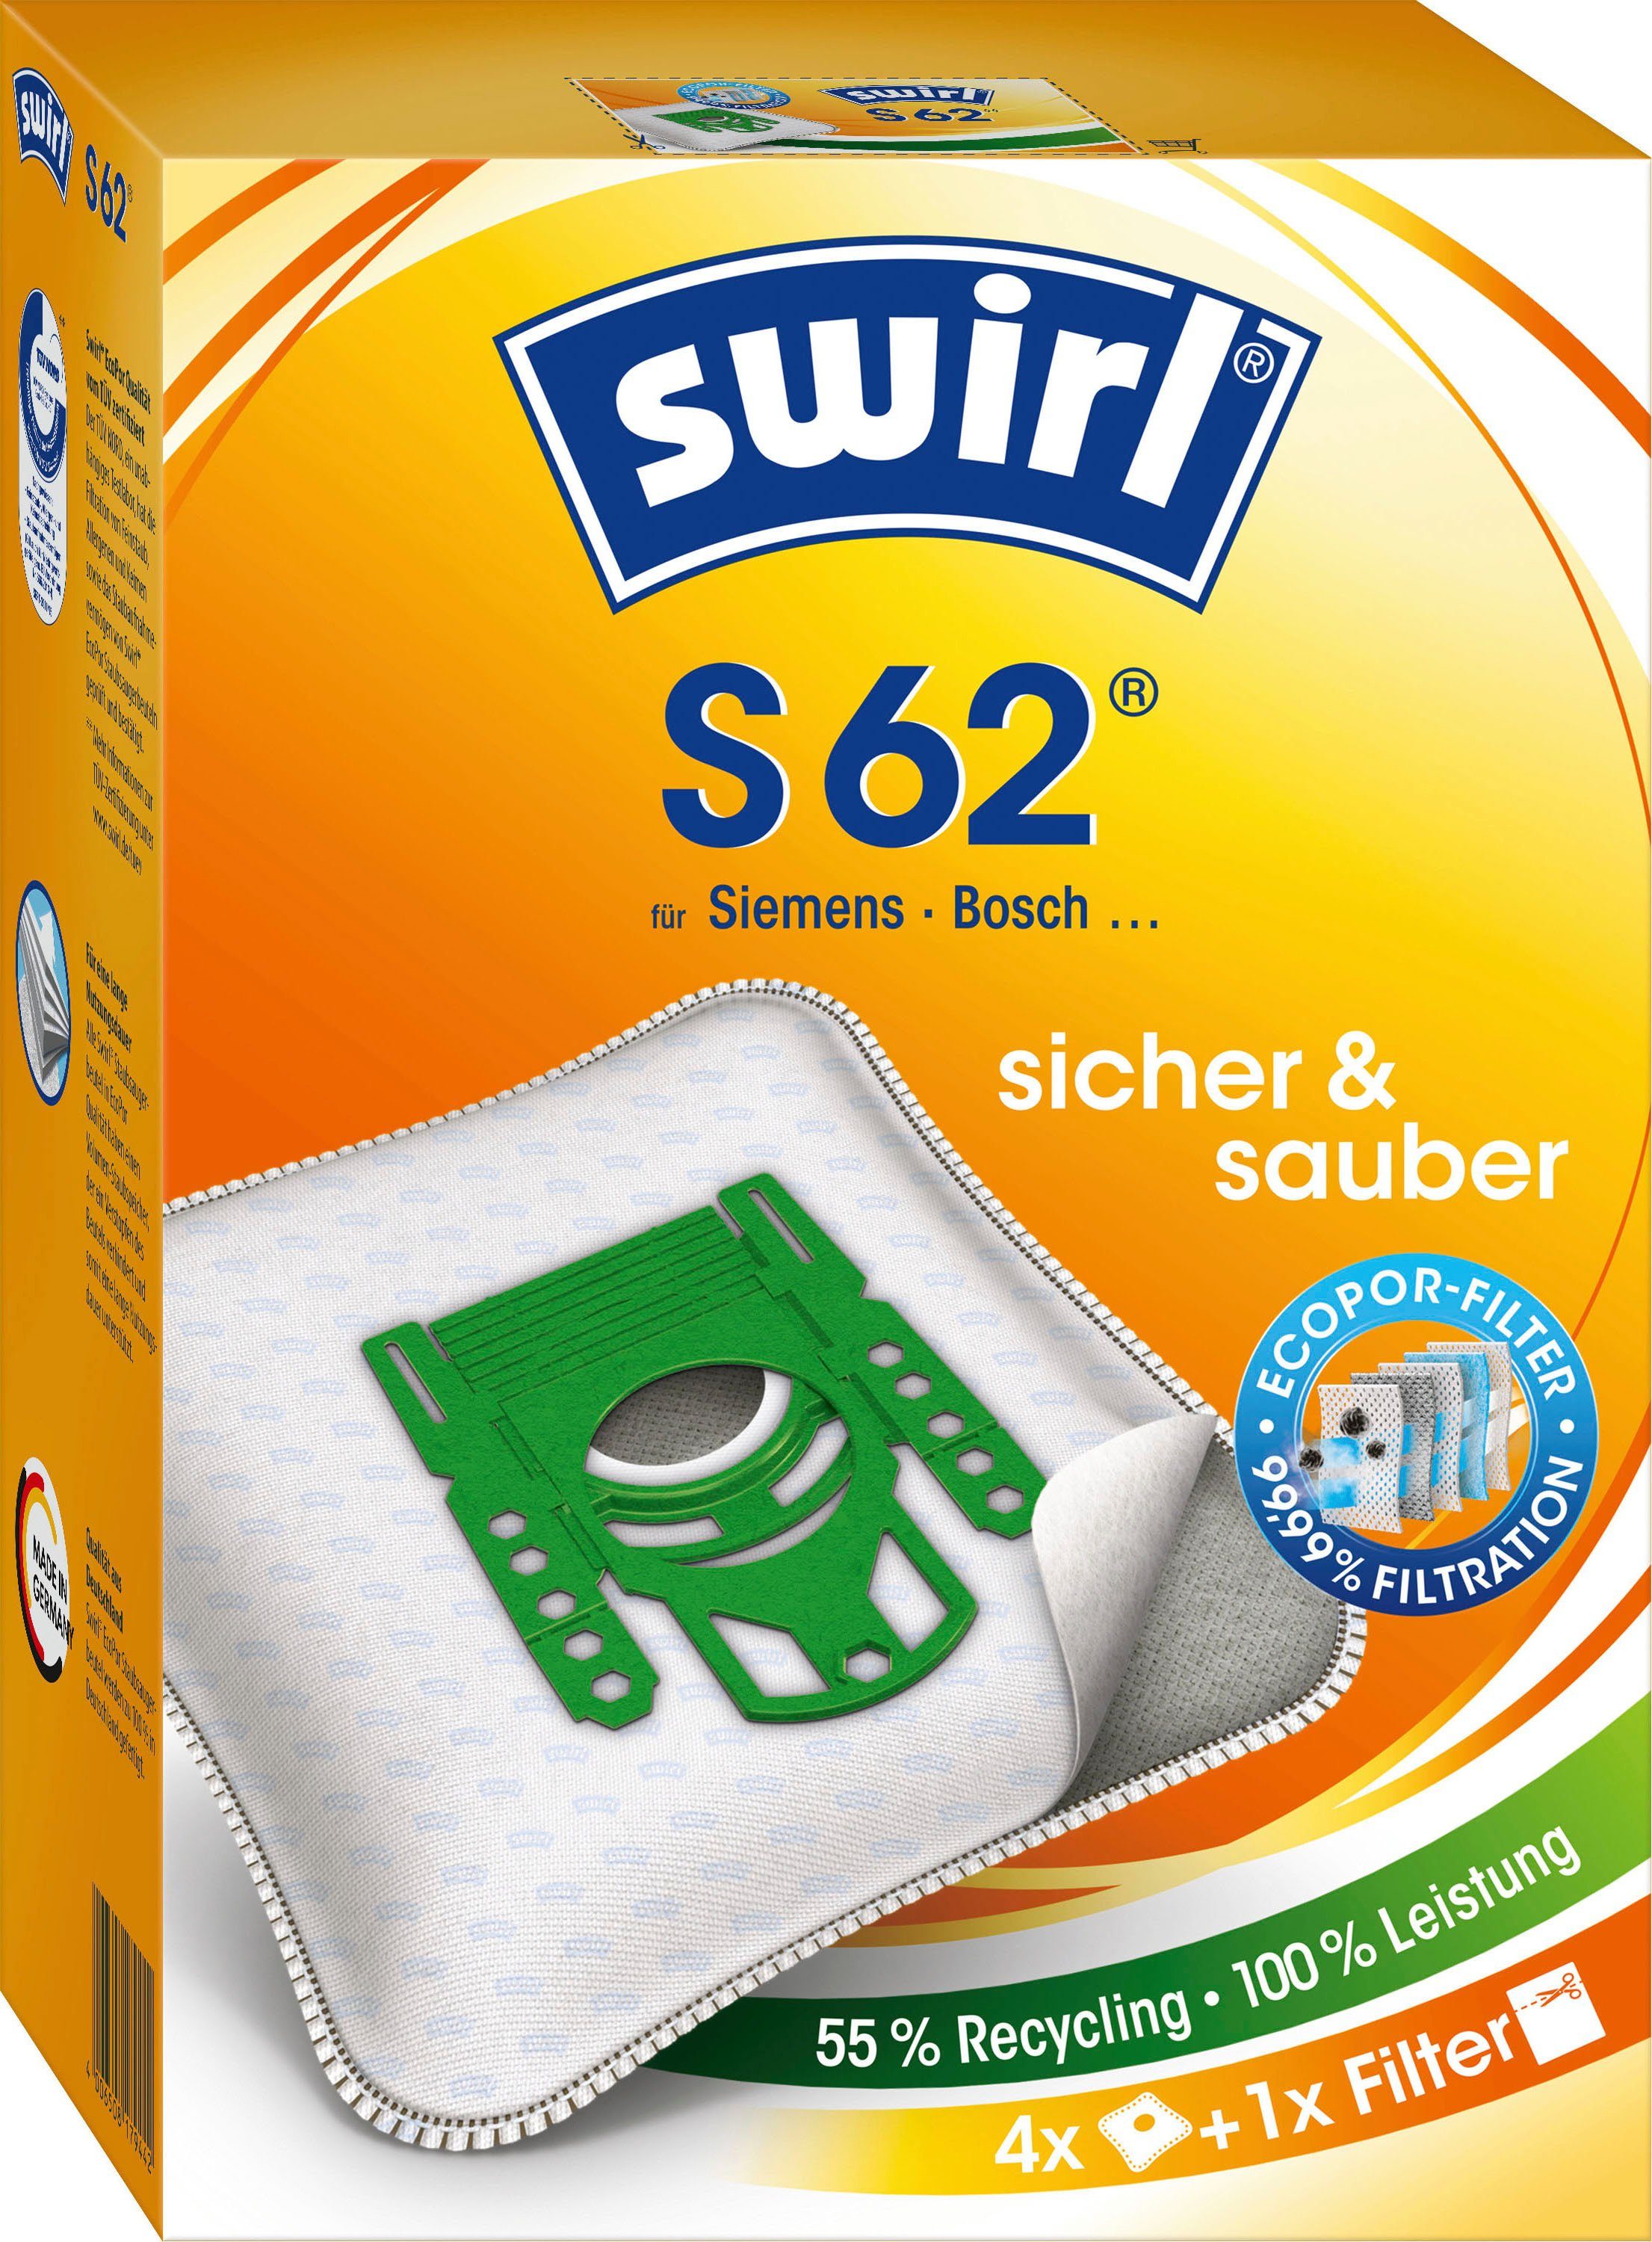 Swirl Siemens, 4er- für Staubsaugerbeutel Pack 62, Bosch, S passend